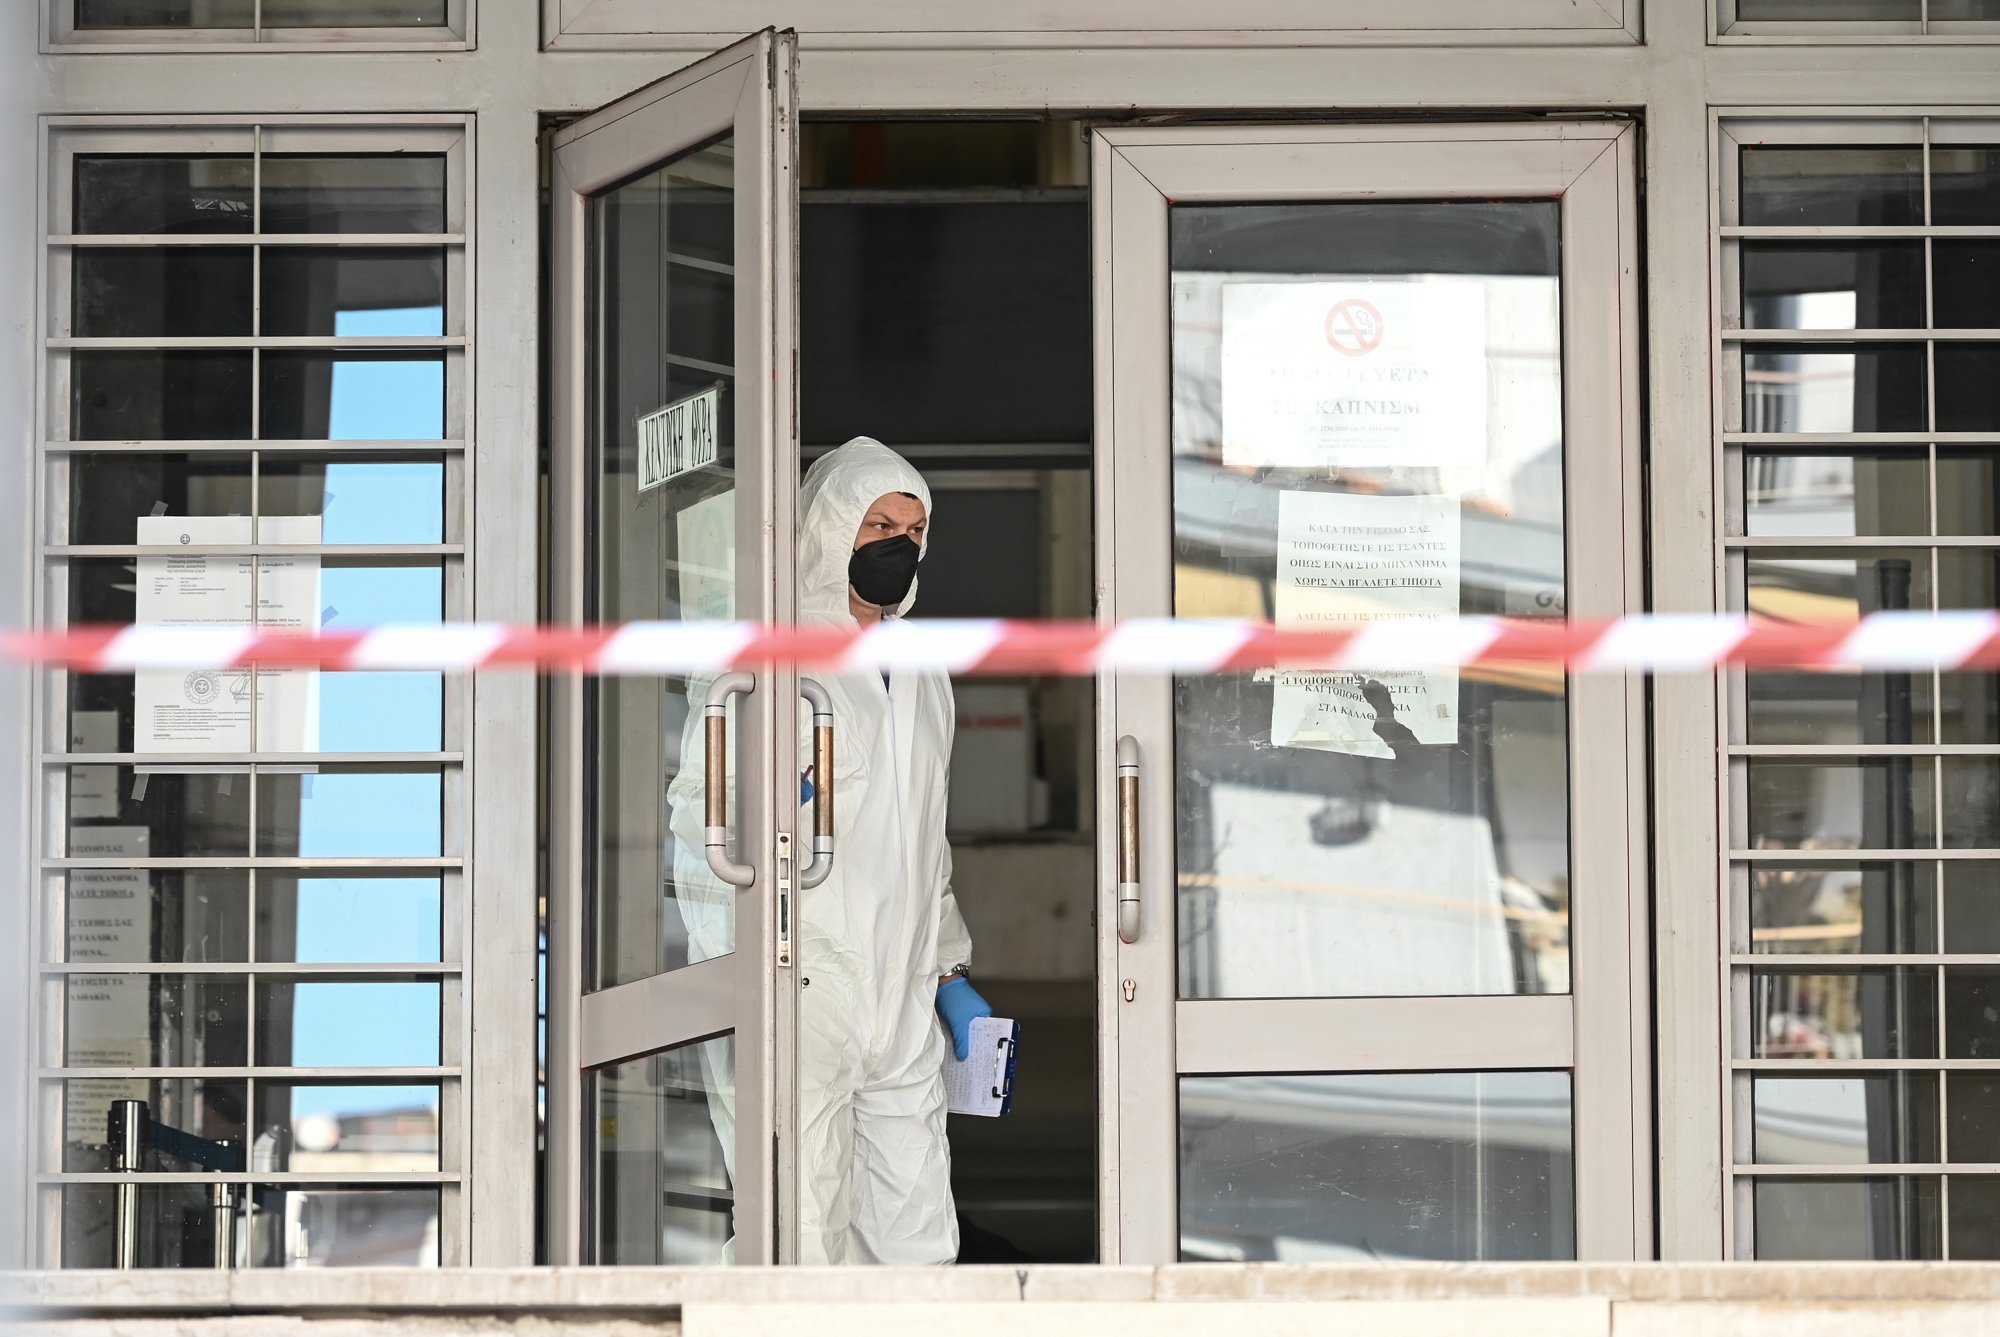 Θεσσαλονίκη: Με «κούριερ» έφτασε η βόμβα στα δικαστήρια - Τις έρευνες ανέλαβε η Αντιτρομοκρατική